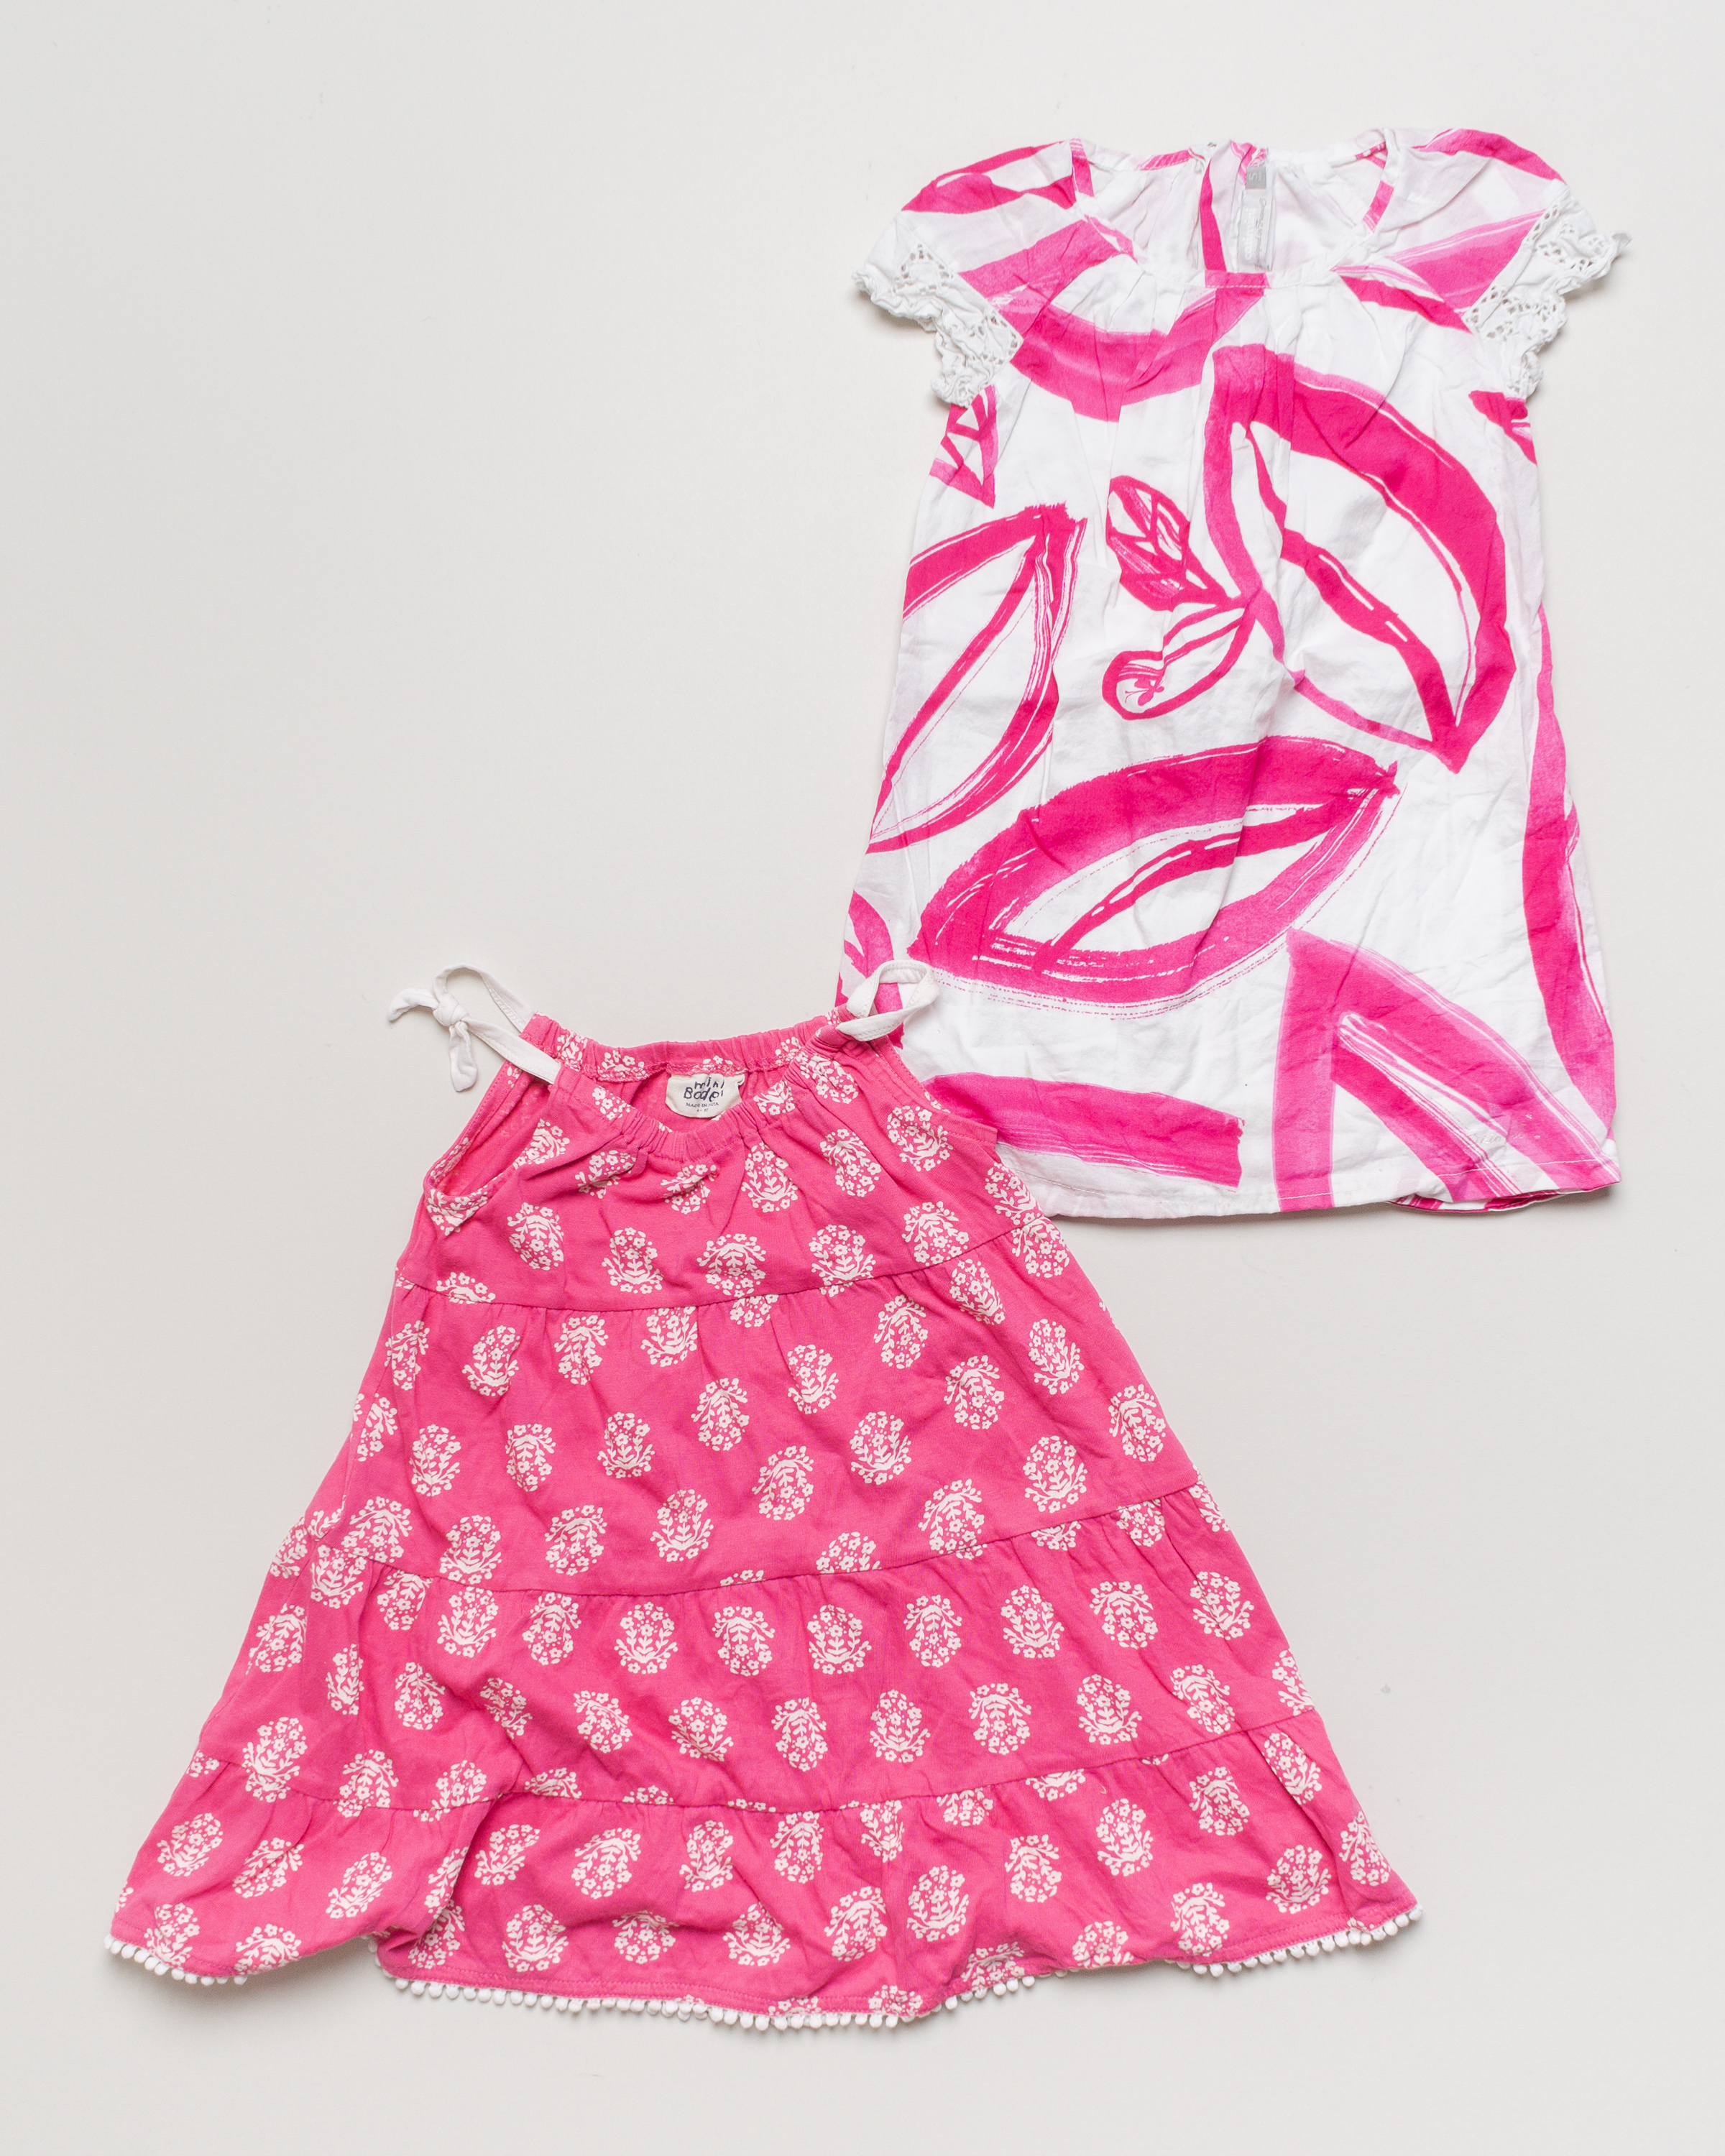 2x Kleid Gr. 110 – 1x Mini Boden 1x Catimini Blumen Print Pink Weiß